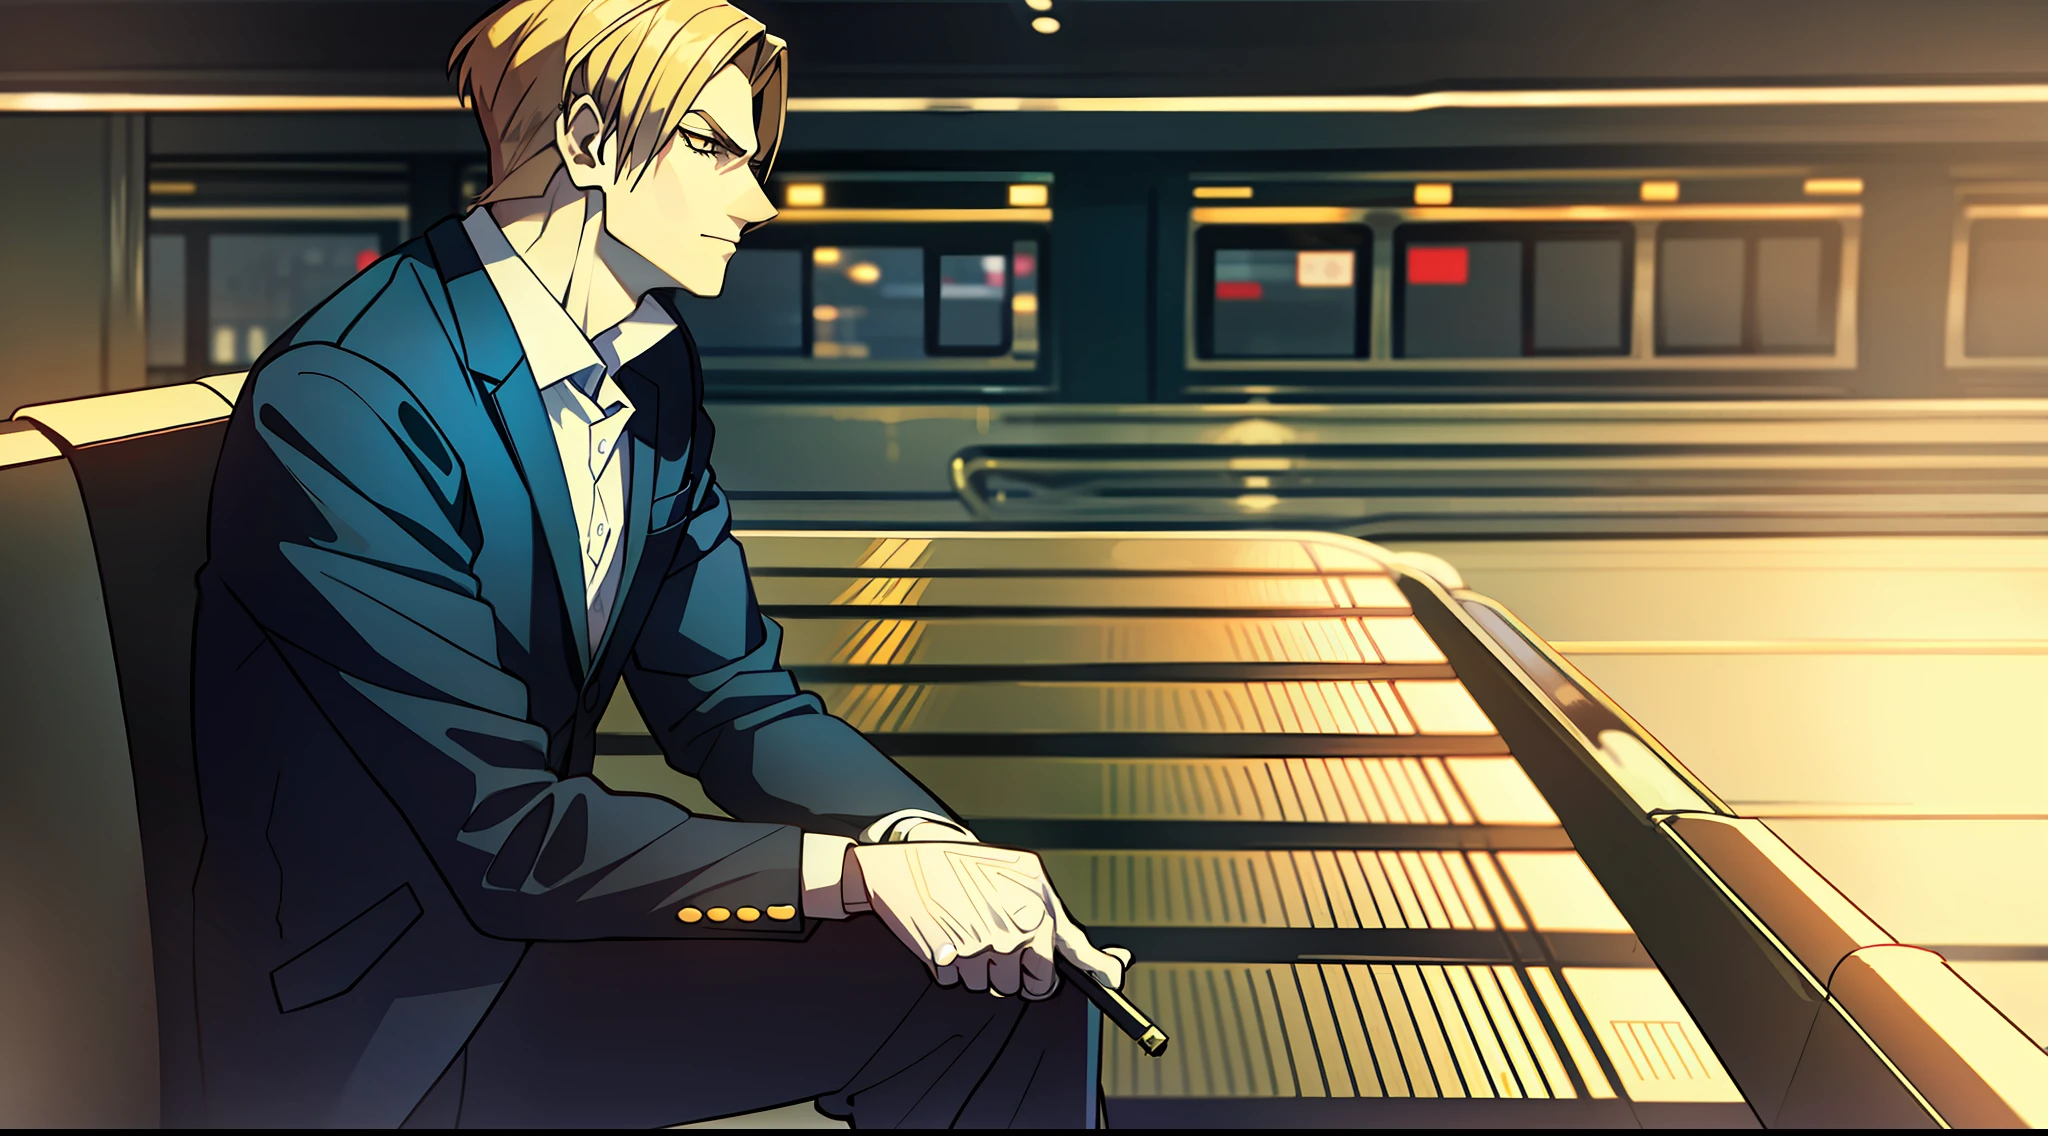 "papel, vestindo terno e fumando um cigarro, sentado de pernas cruzadas, um rosto bonito em um cenário preto e branco na estação de trem."